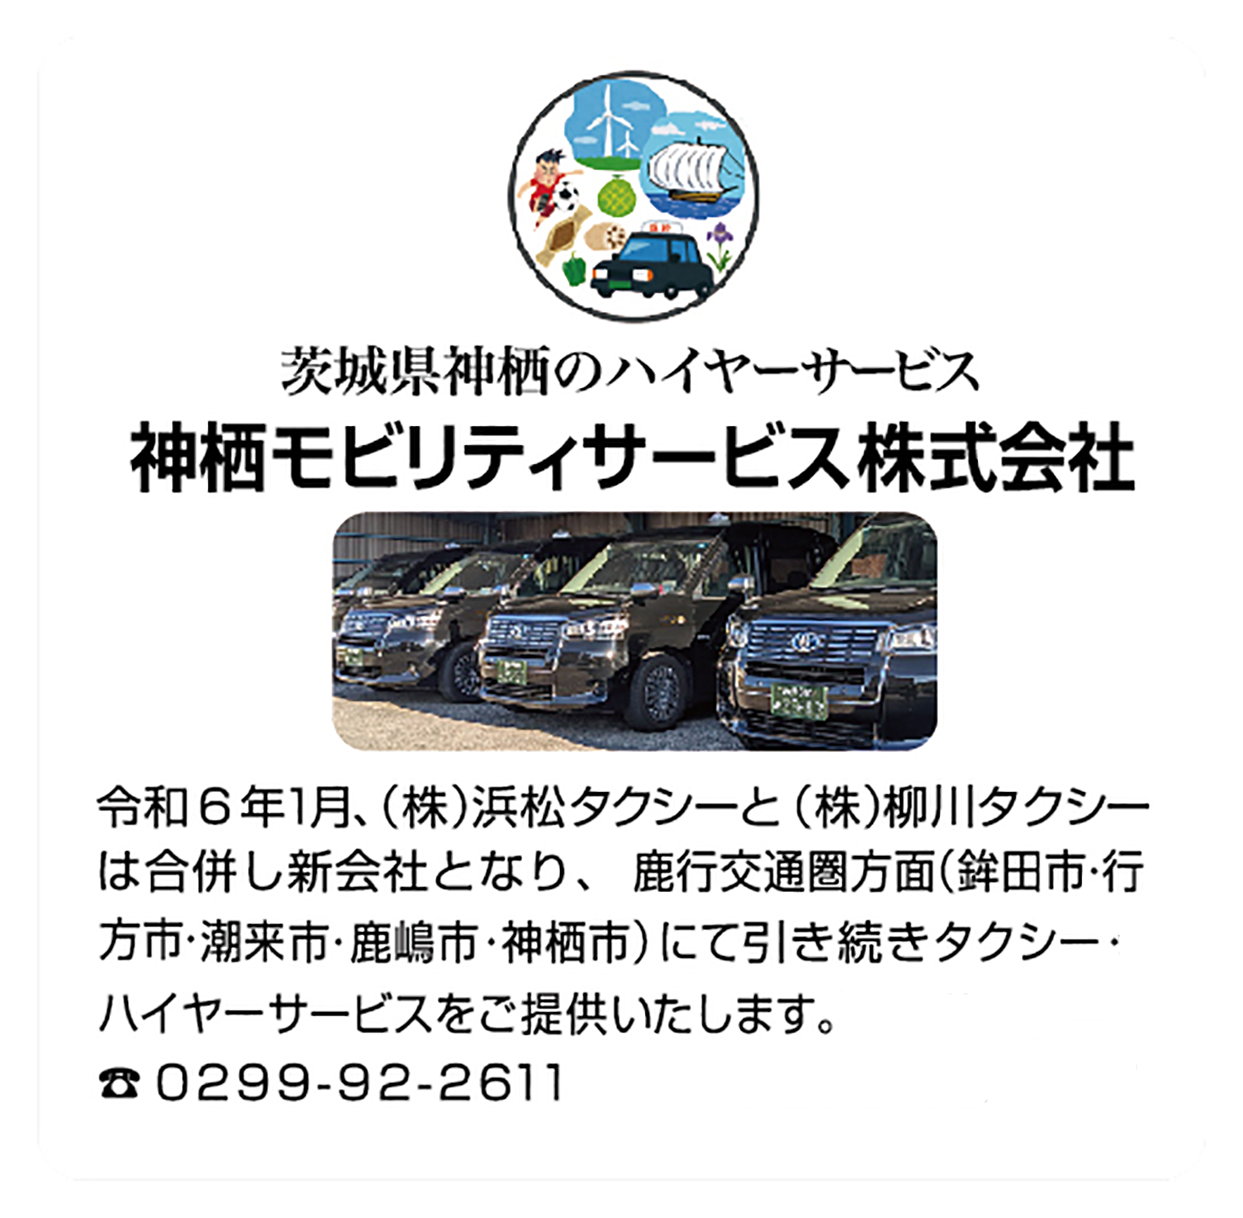 株式会社柳川タクシー